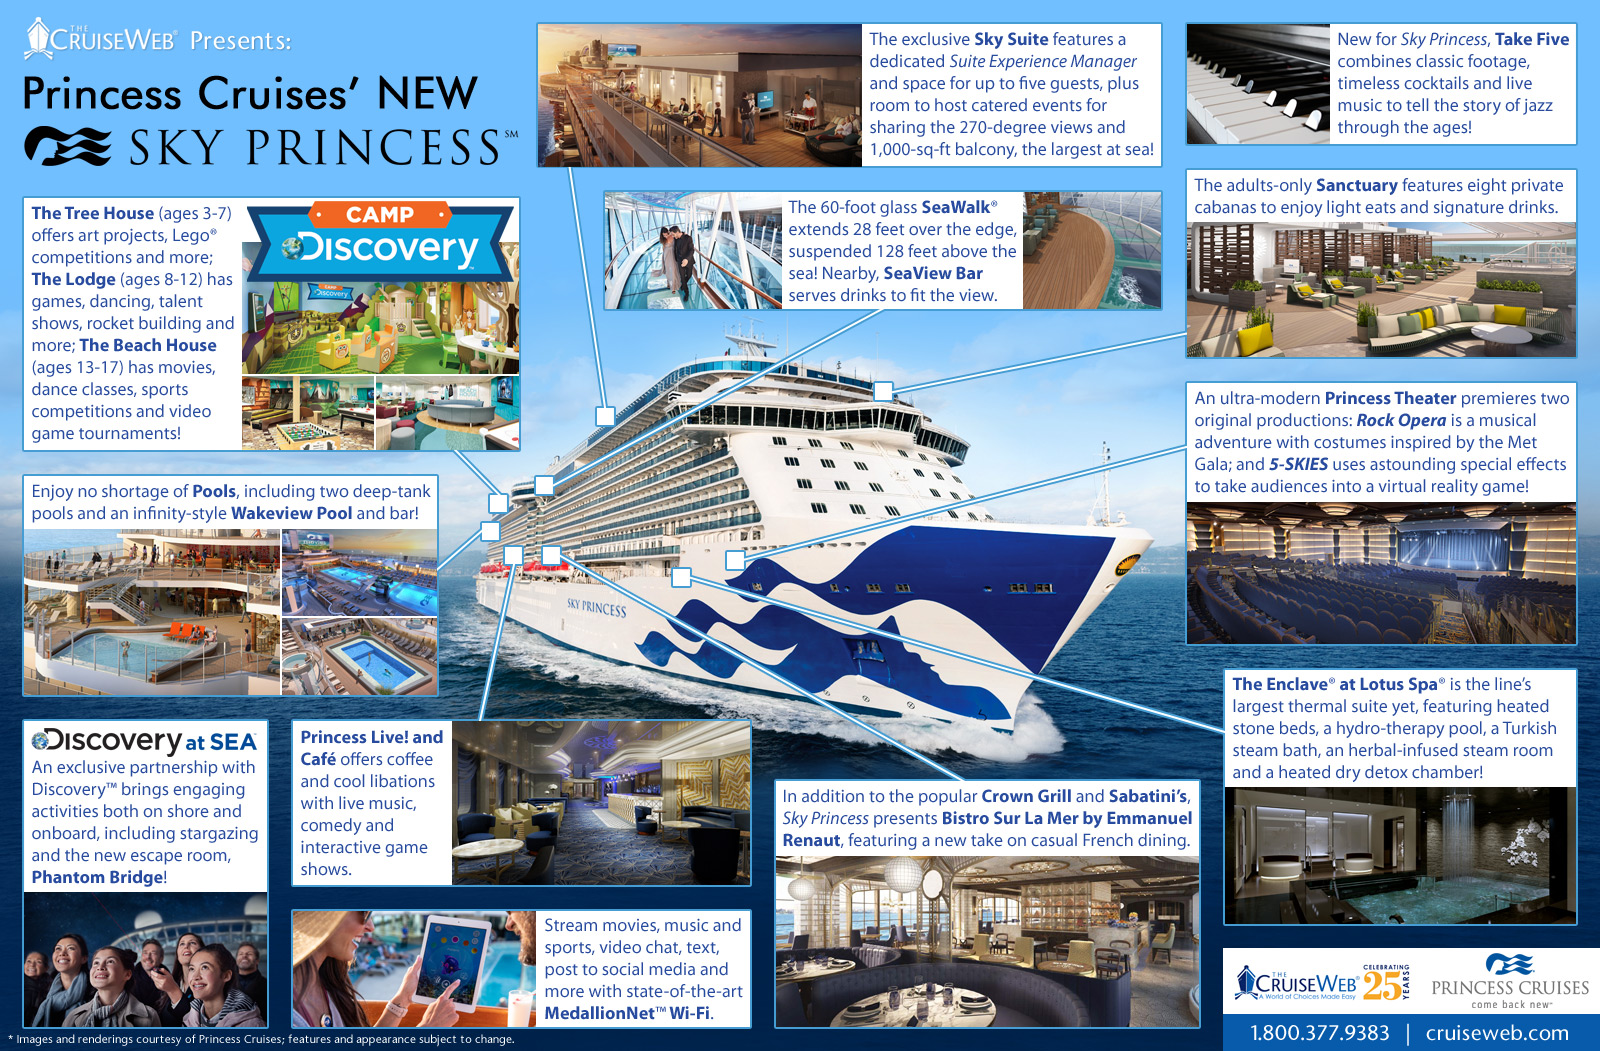 Sky Princess Cruise Ship, 2019, 2020 and 2021 Sky Princess destinations